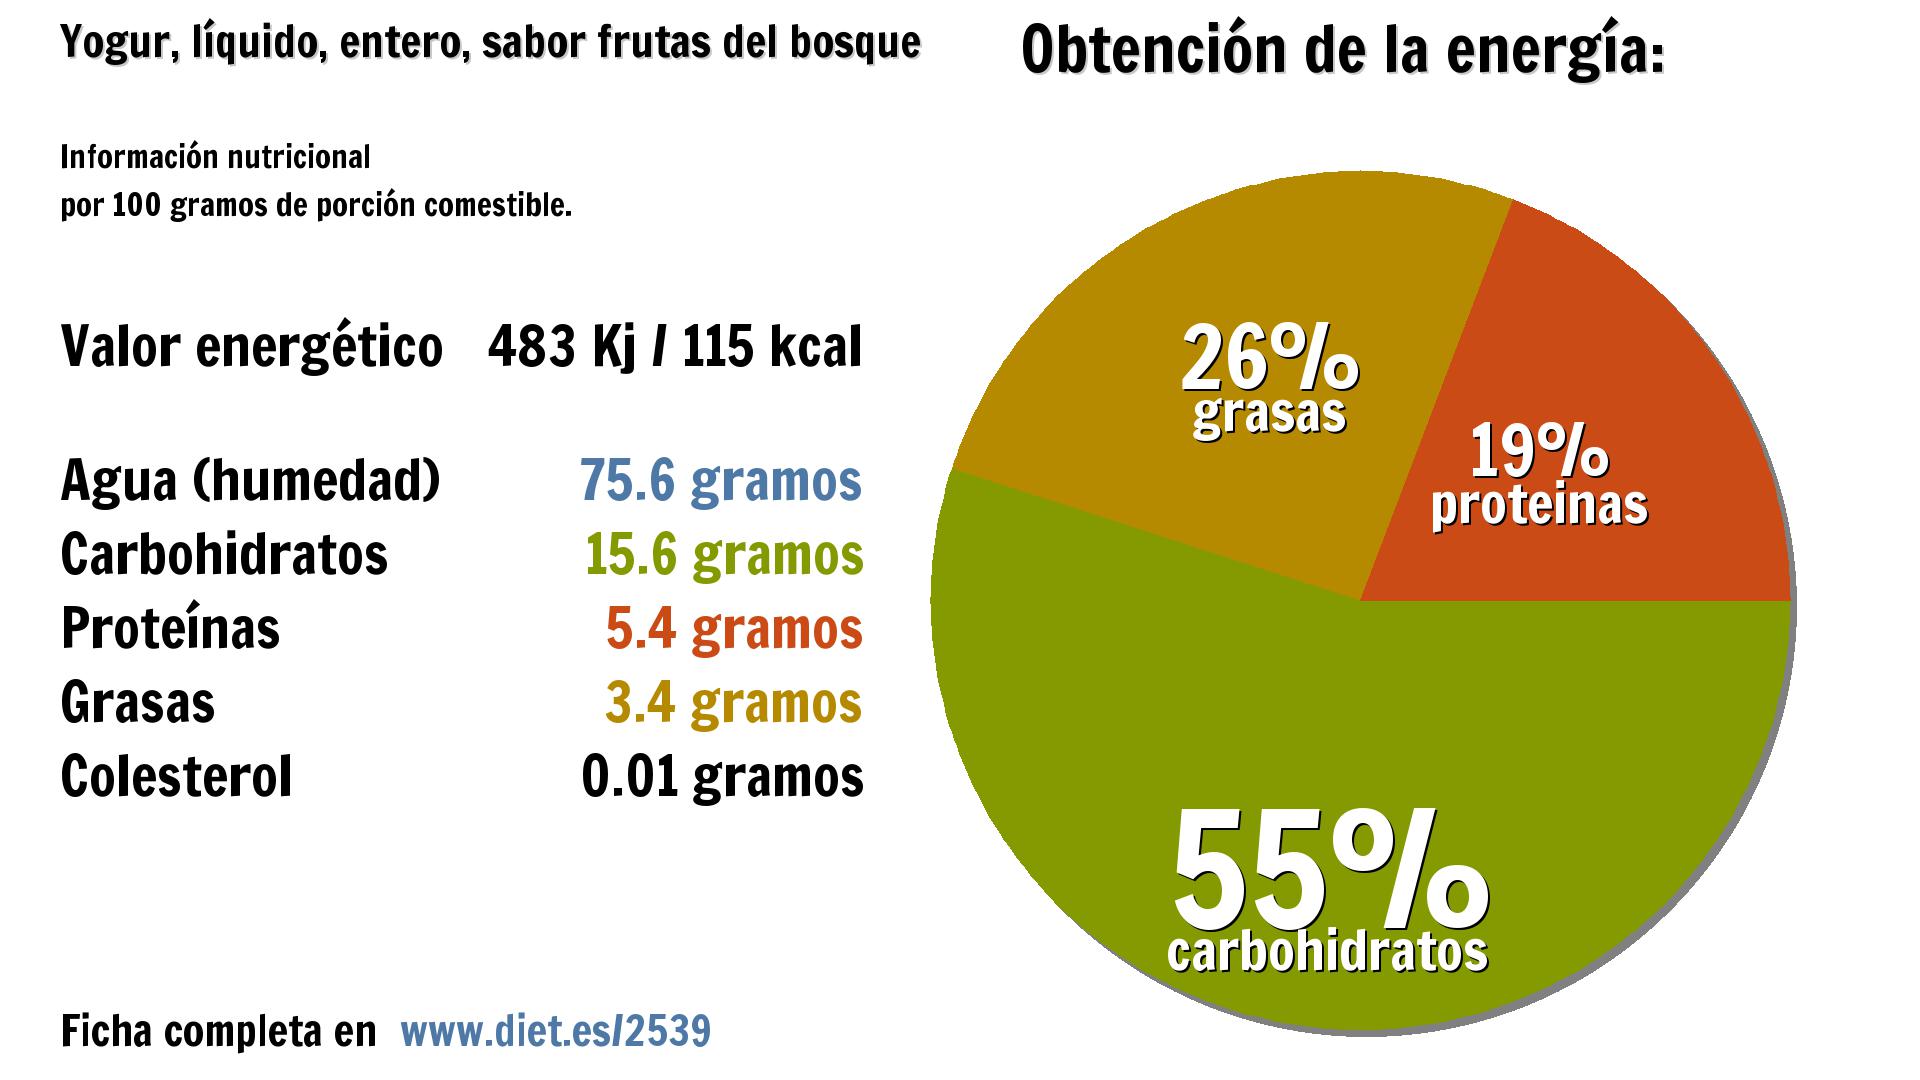 Yogur, líquido, entero, sabor frutas del bosque: energía 483 Kj, agua 76 g., carbohidratos 16 g., proteínas 5 g. y grasas 3 g.